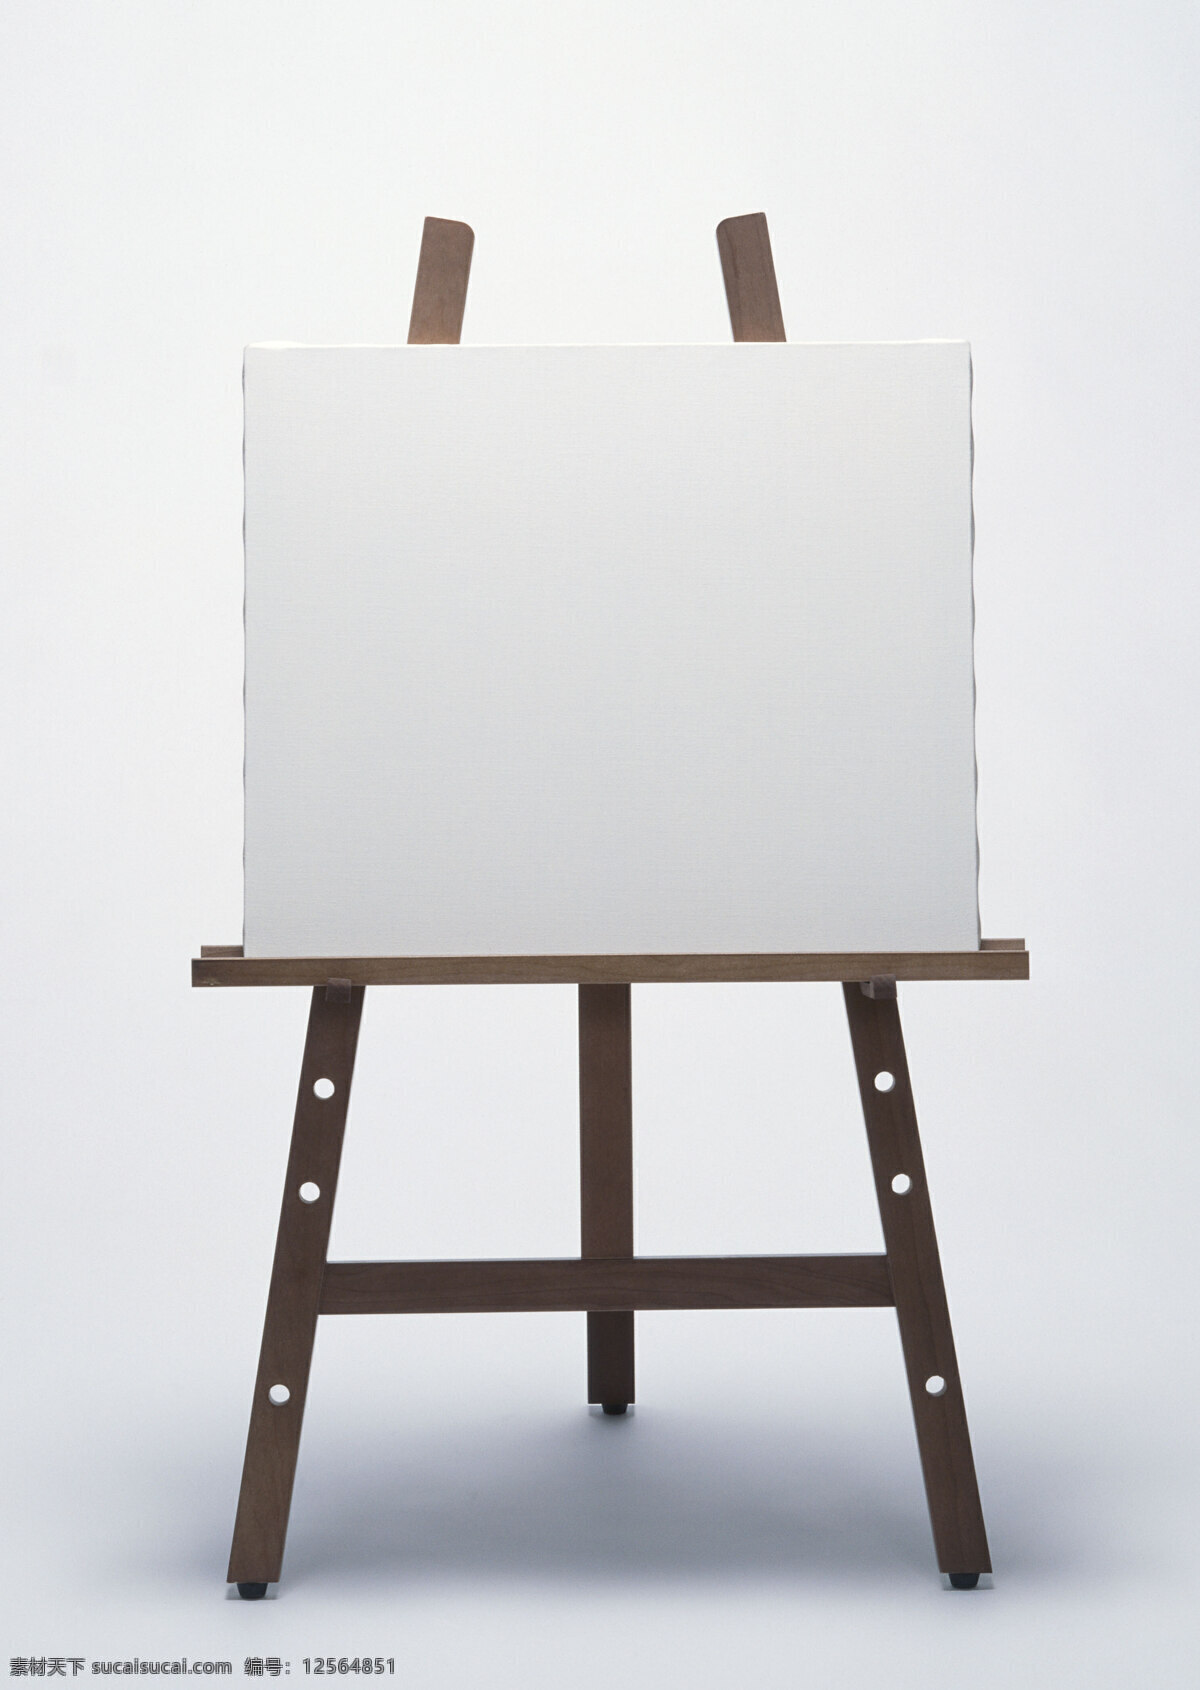 画板 架子 画架 绘画 白板 办公用品 美术绘画 文化艺术